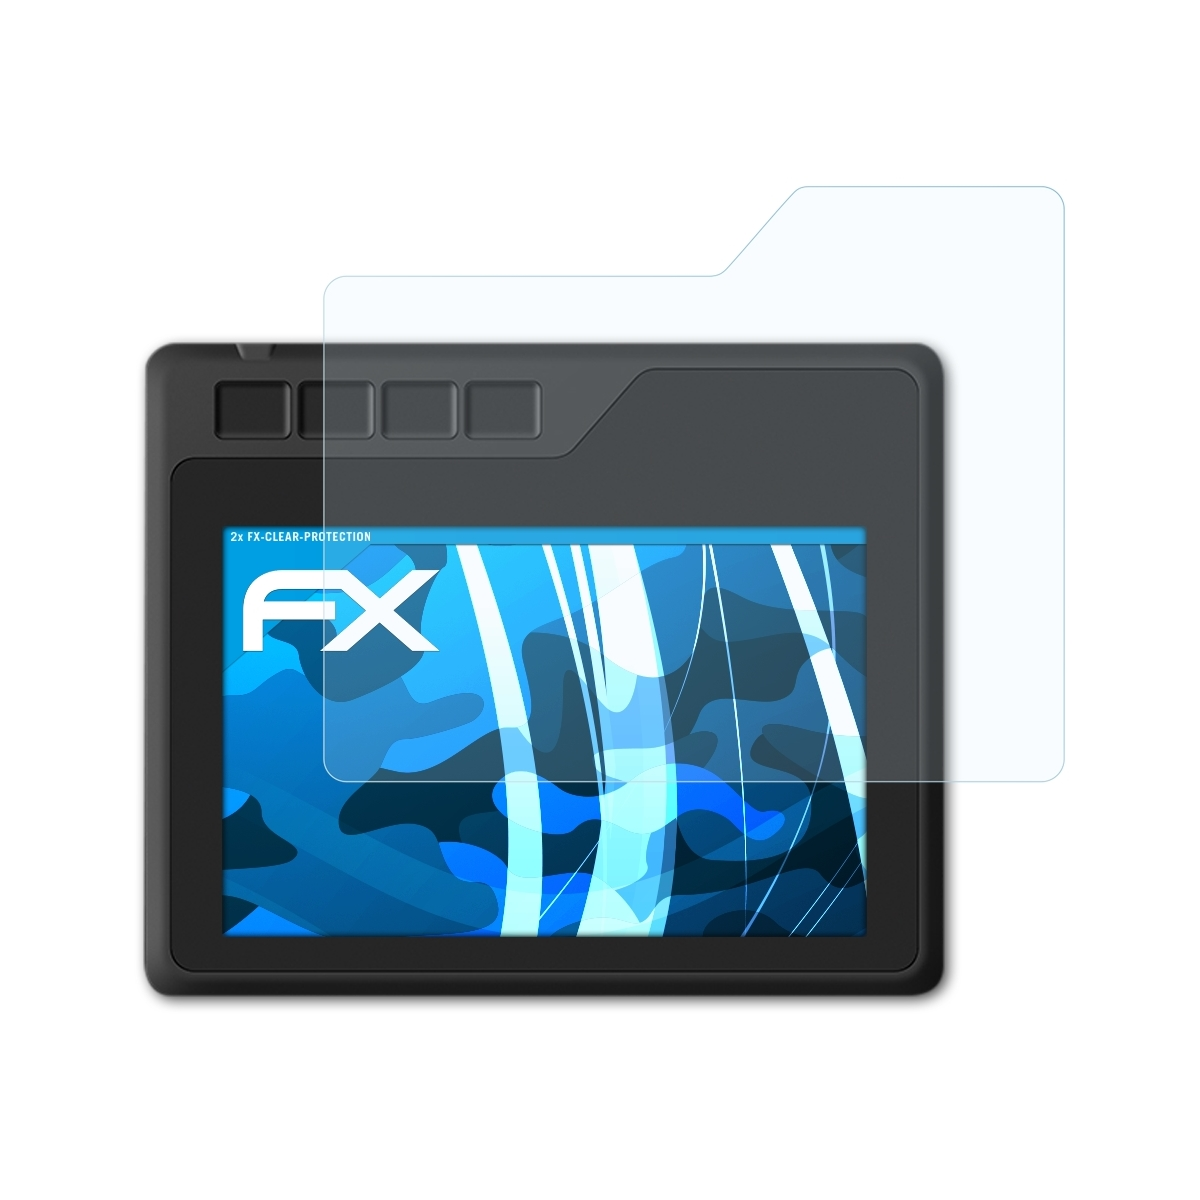 ATFOLIX 2x FX-Clear Displayschutz(für Gaomon S620)